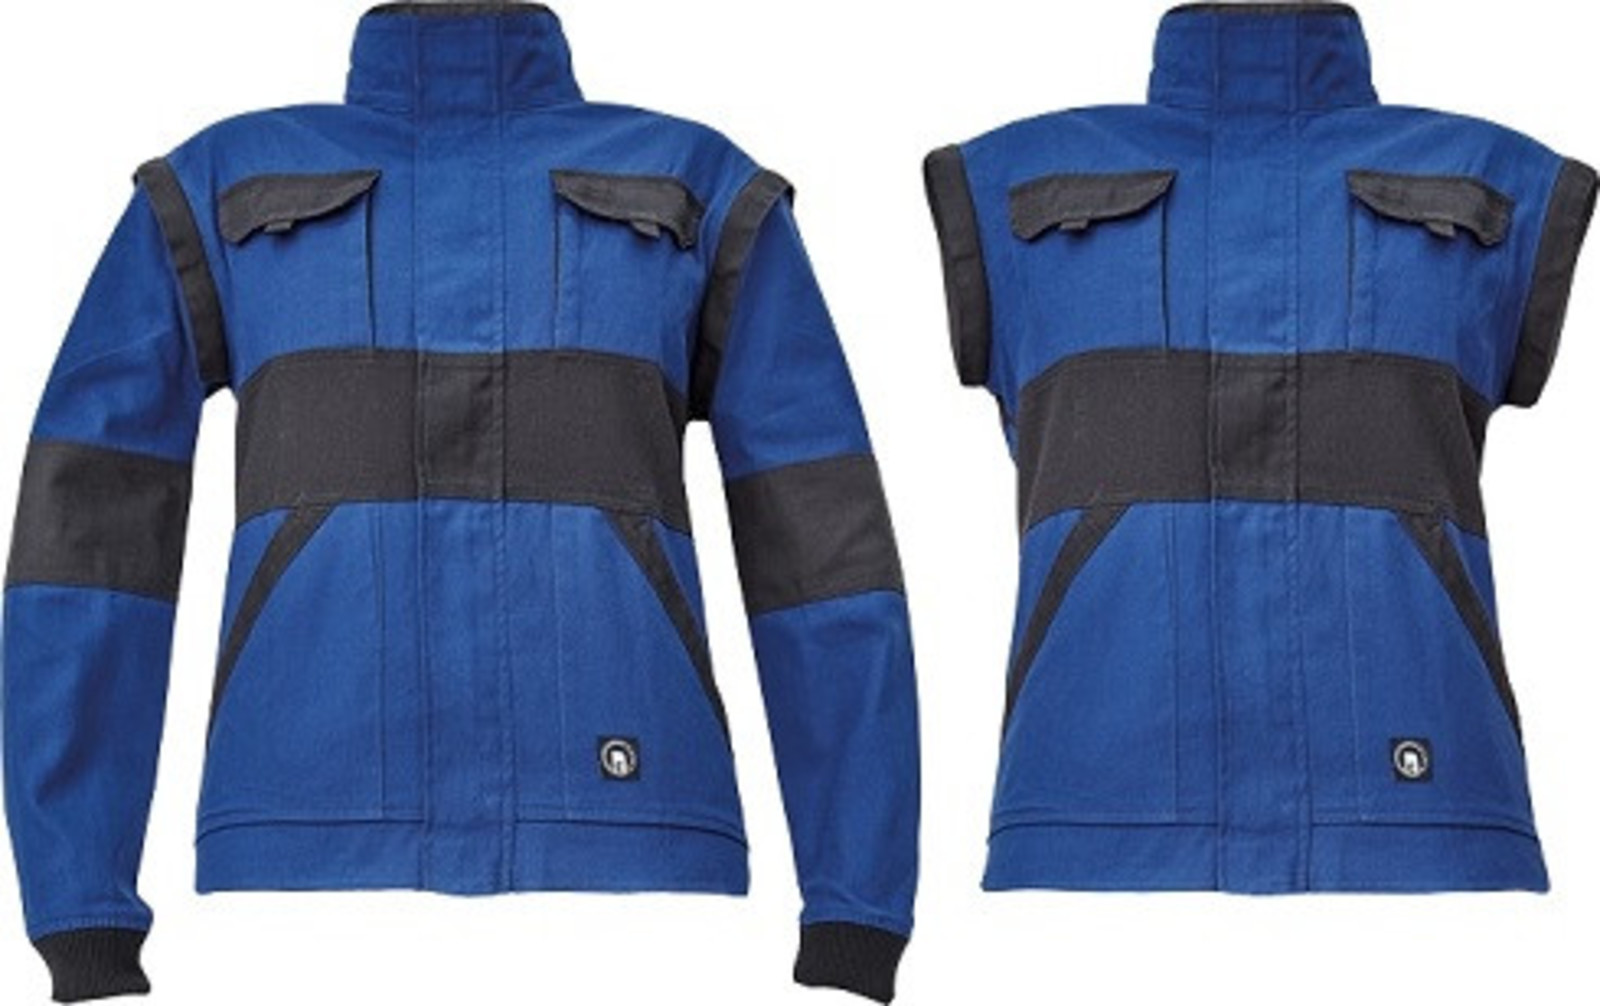 Dámska bavlnená montérková bunda Cerva Max Neo Lady 2v1 - veľkosť: 42, farba: modrá/čierna